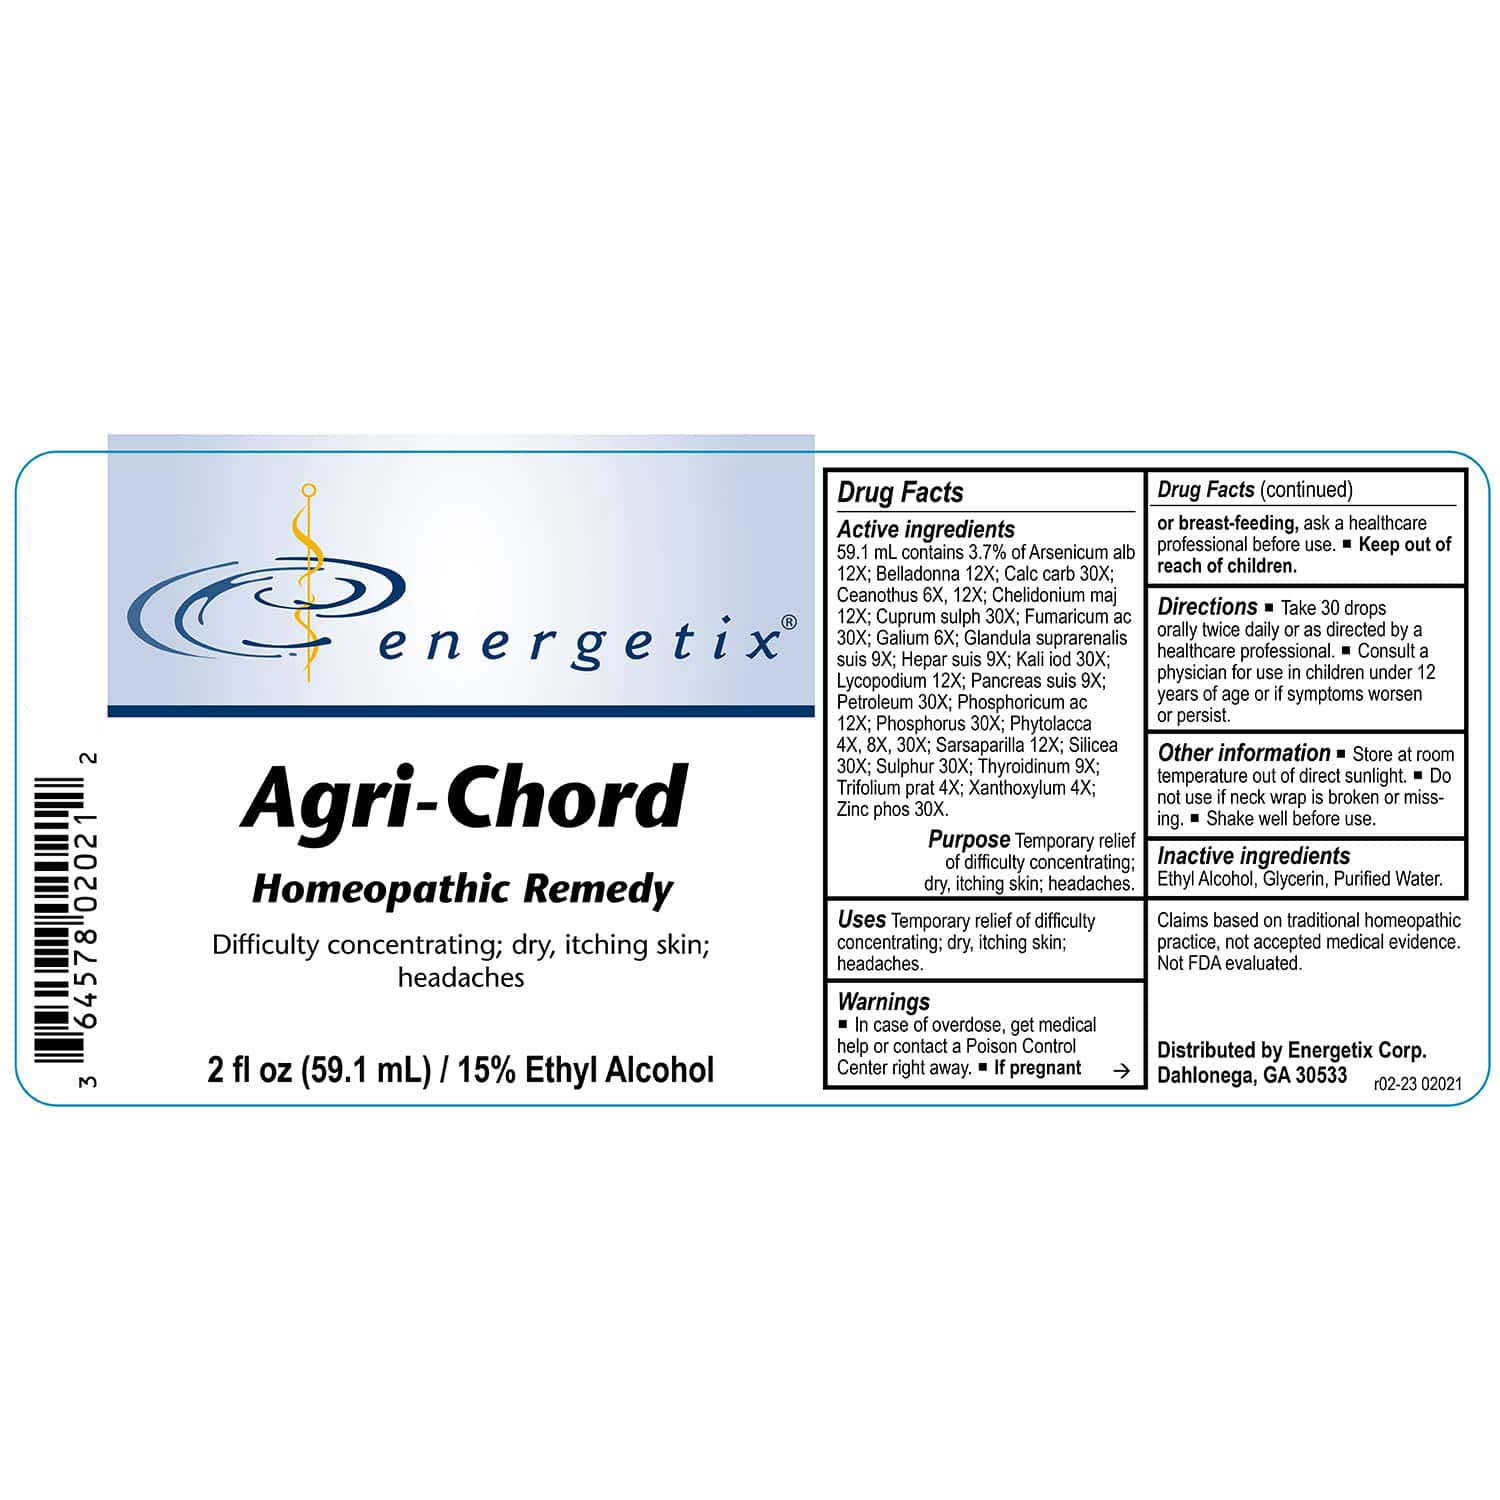 Energetix Agri-Chord Label